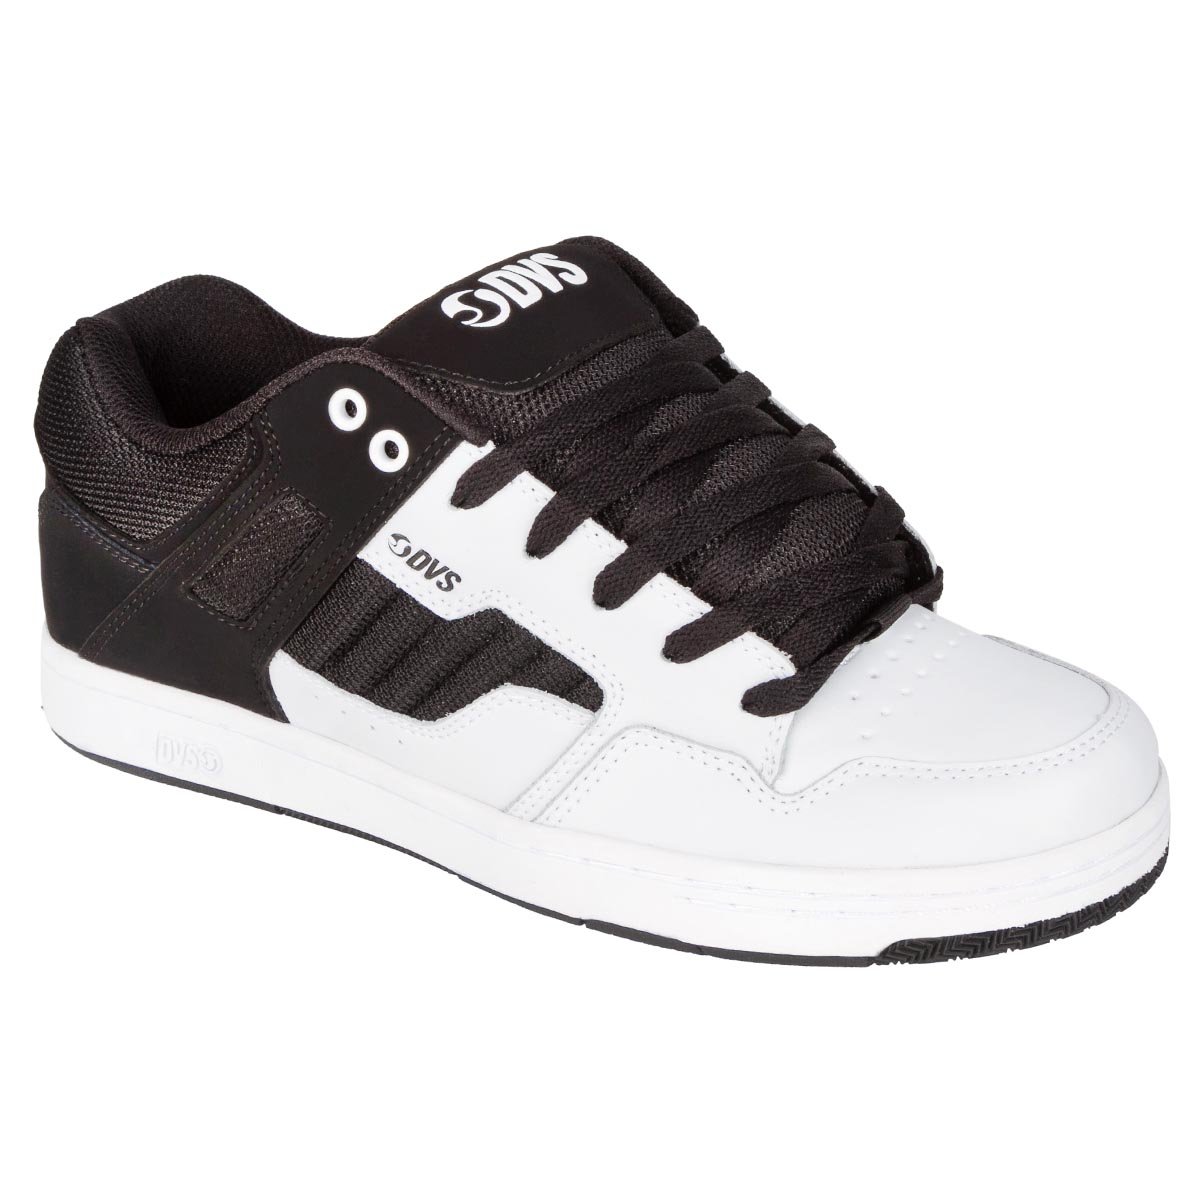 DVS Schuhe Enduro 125 White Black Leather